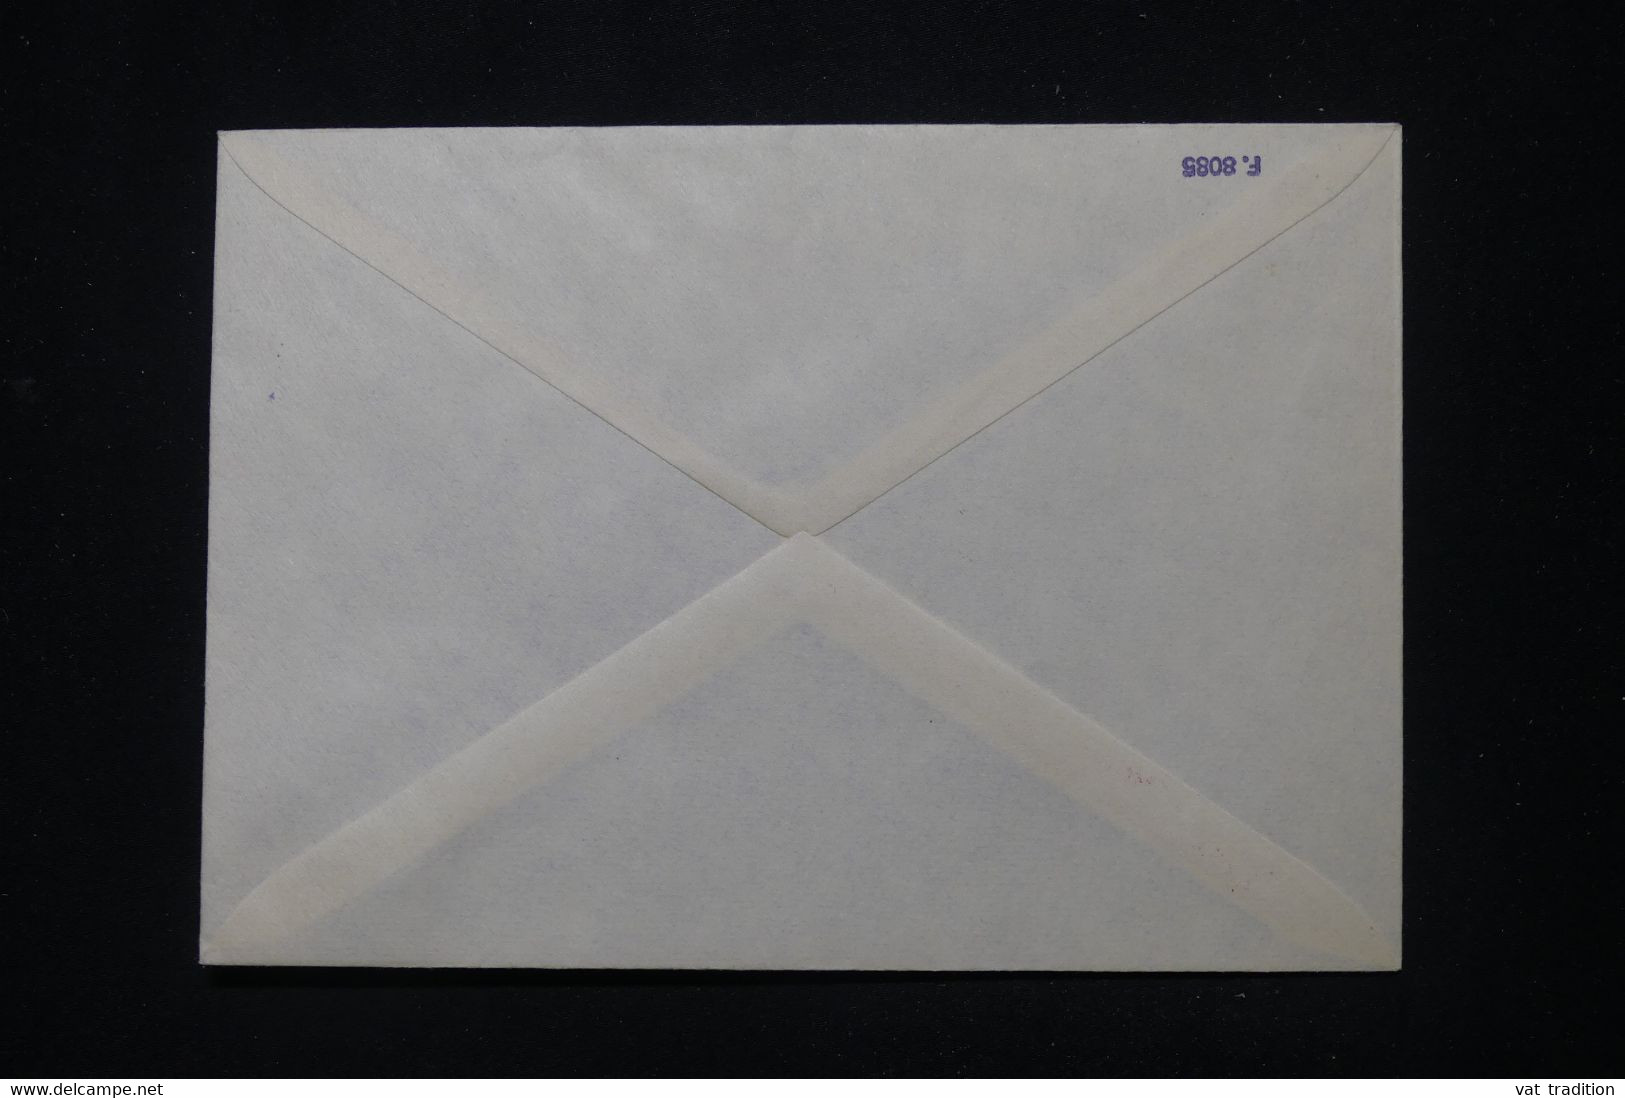 ARGENTINE - Cachet Avec Signature D'un Directeur Scientifique Sur Enveloppe En 1985, à Voir - L 112886 - Covers & Documents